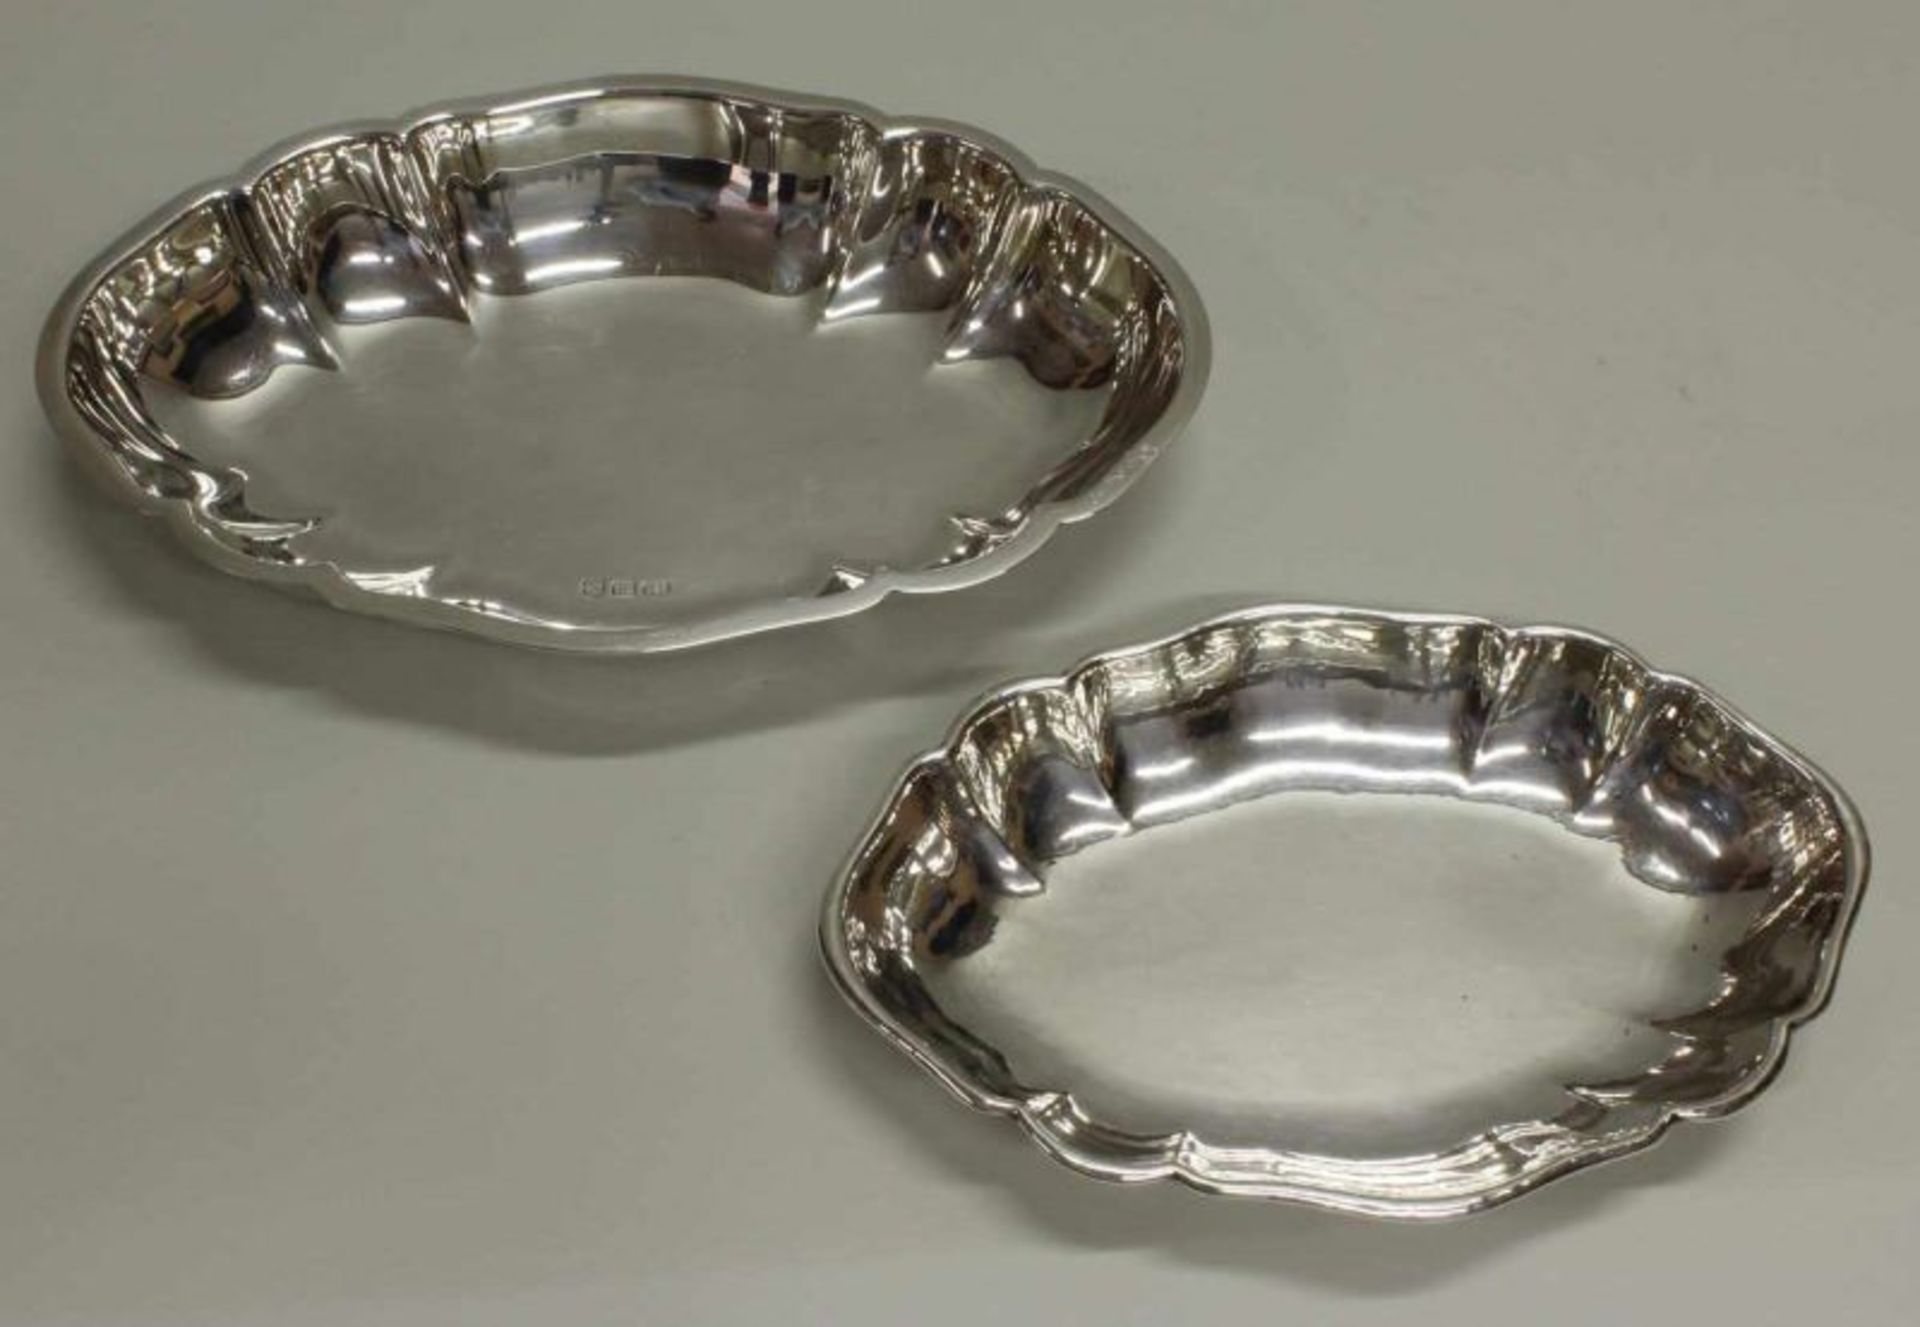 2 Vorlegeschalen, Silber 830/925, Wilkens, oval, passig-geschweift, 3.5 x 24.5 x 16.5 cm bzw. 4.5